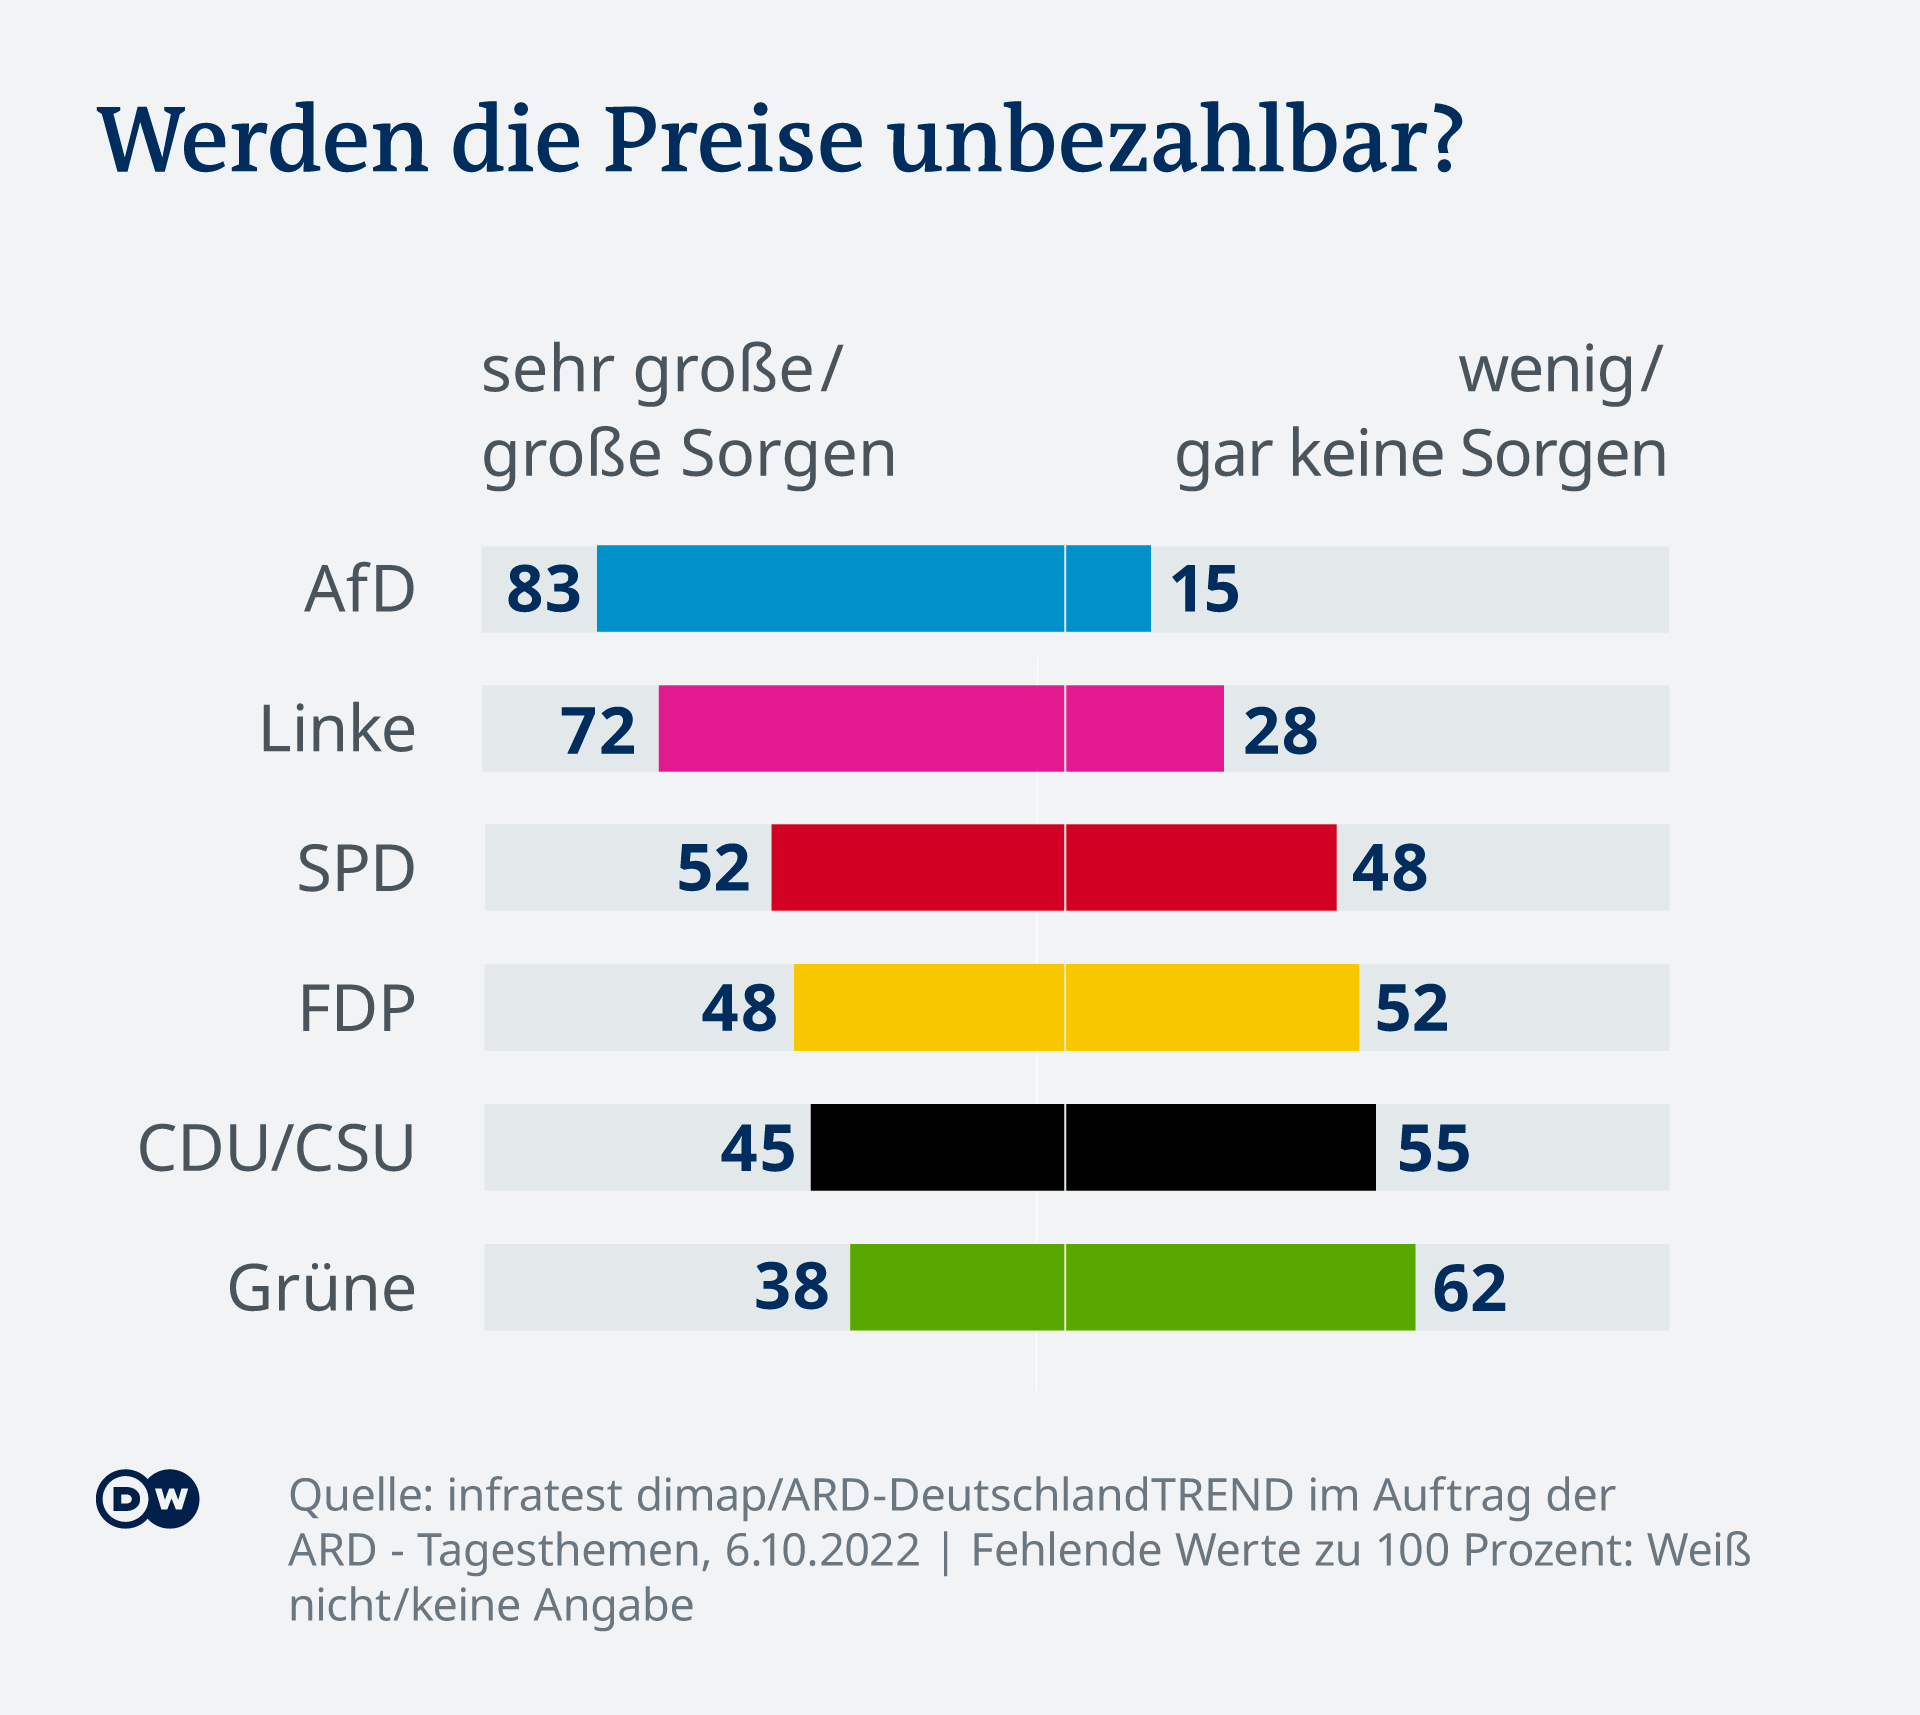 Die Grafik zeigt, wie die jeweiligen Parteianhänger die Frage beantworten, ob sie sich sehr große / große Sorgen oder wenig / gar keine Sorgen machen, dass sie ihre Rechnungen nicht mehr bezahlen können. Angaben in Prozentpunkten: AfD 83/15, Linke 72/28, SPD 52/48, FDP 48/52, CDU/CSU 45/55, Grüne 38/62